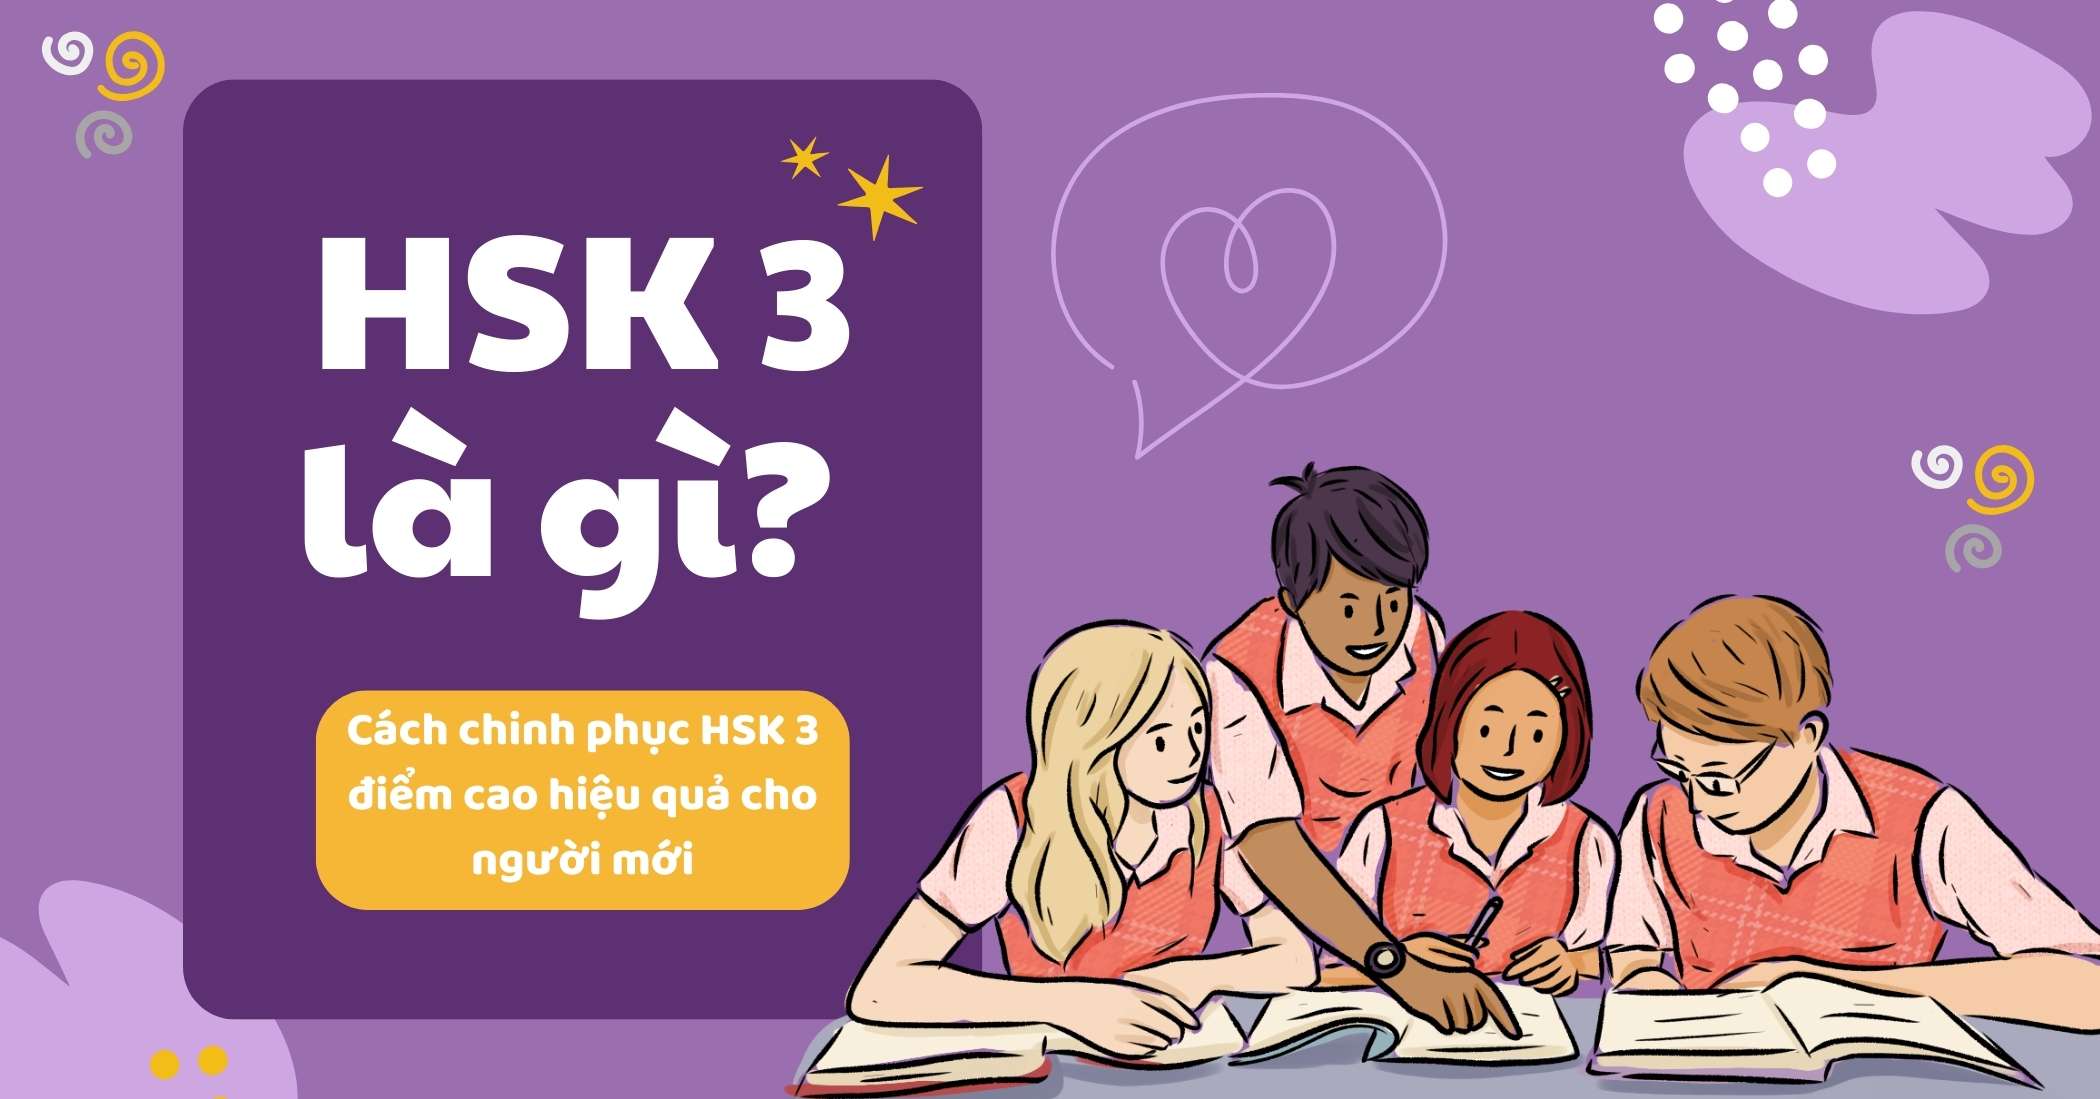 HSK 3 là gì? Cách chinh phục HSK 3 điểm cao hiệu quả cho người mới